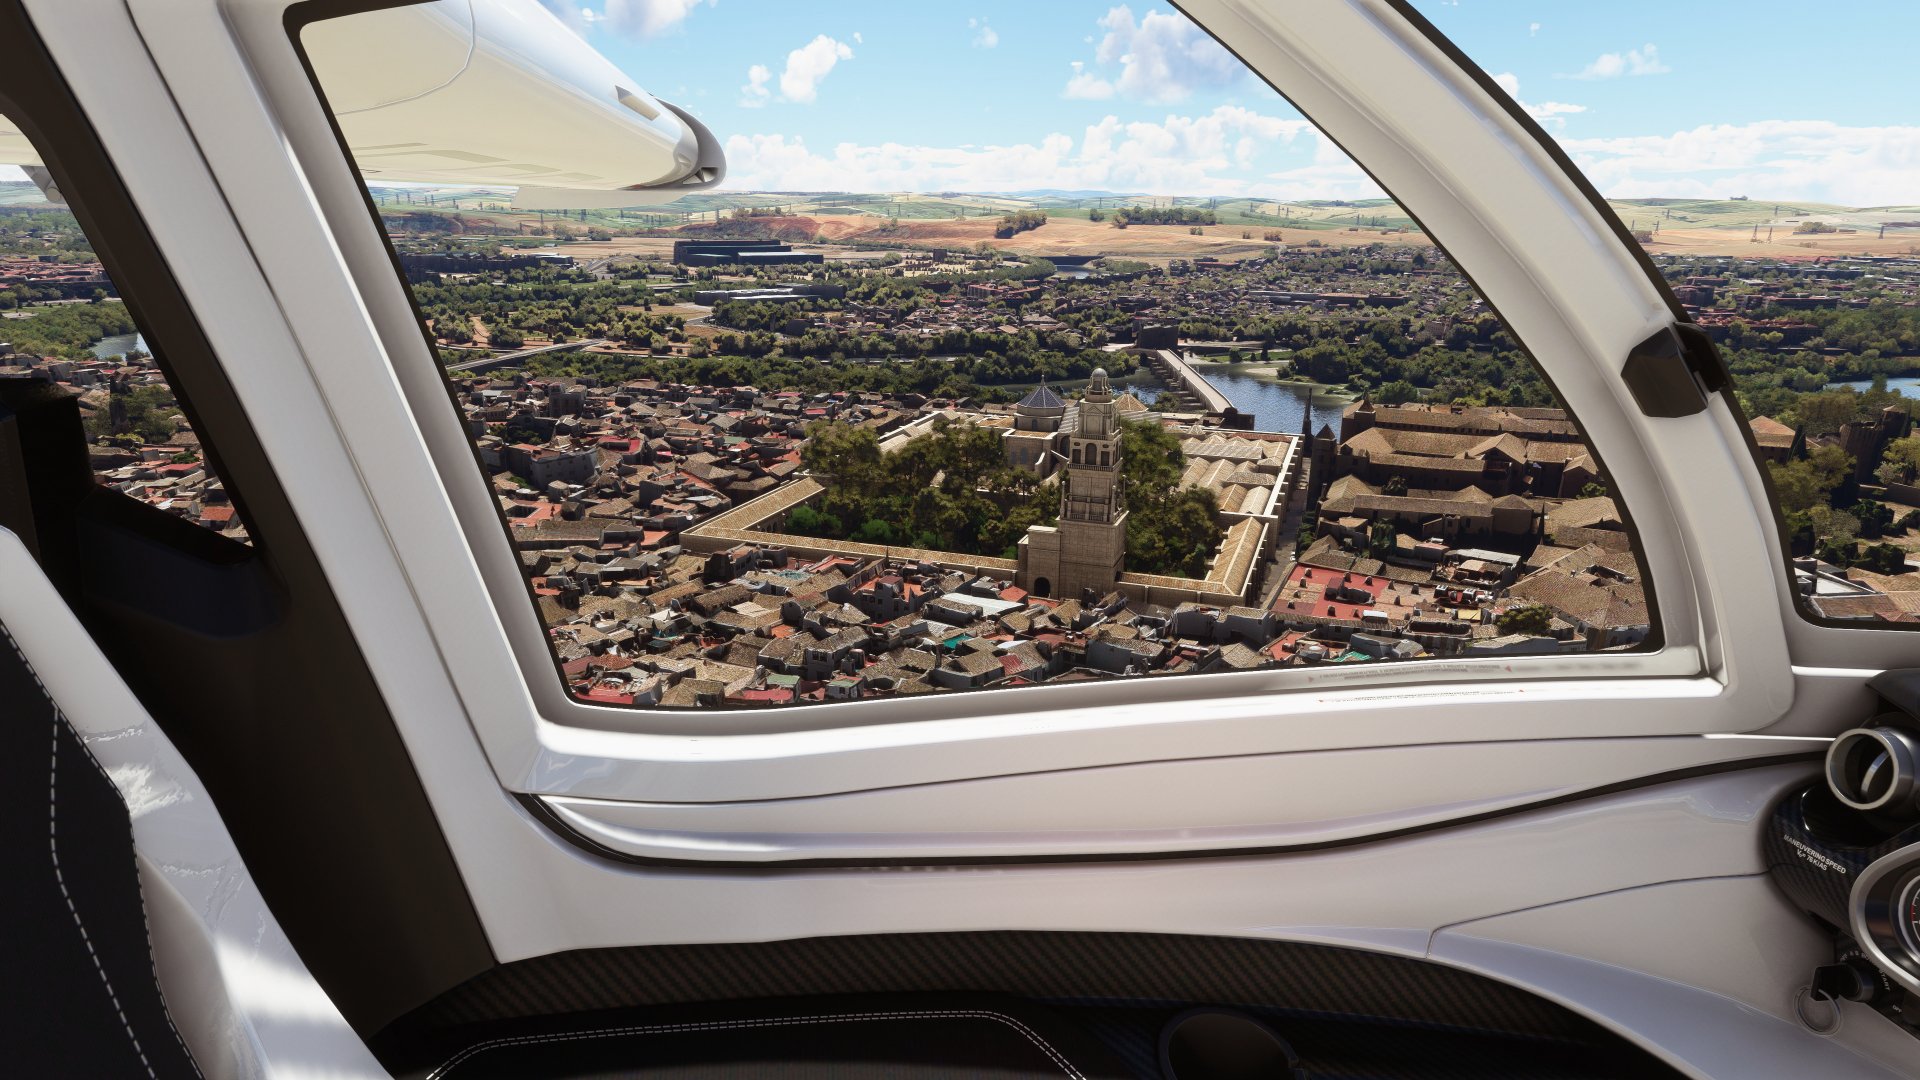 Disponible la nueva actualización gratuita de Microsoft Flight Simulator especial España y Portugal - Microsoft Flight Simulator se actualiza con la World Update VIII, centrada en la península ibérica.